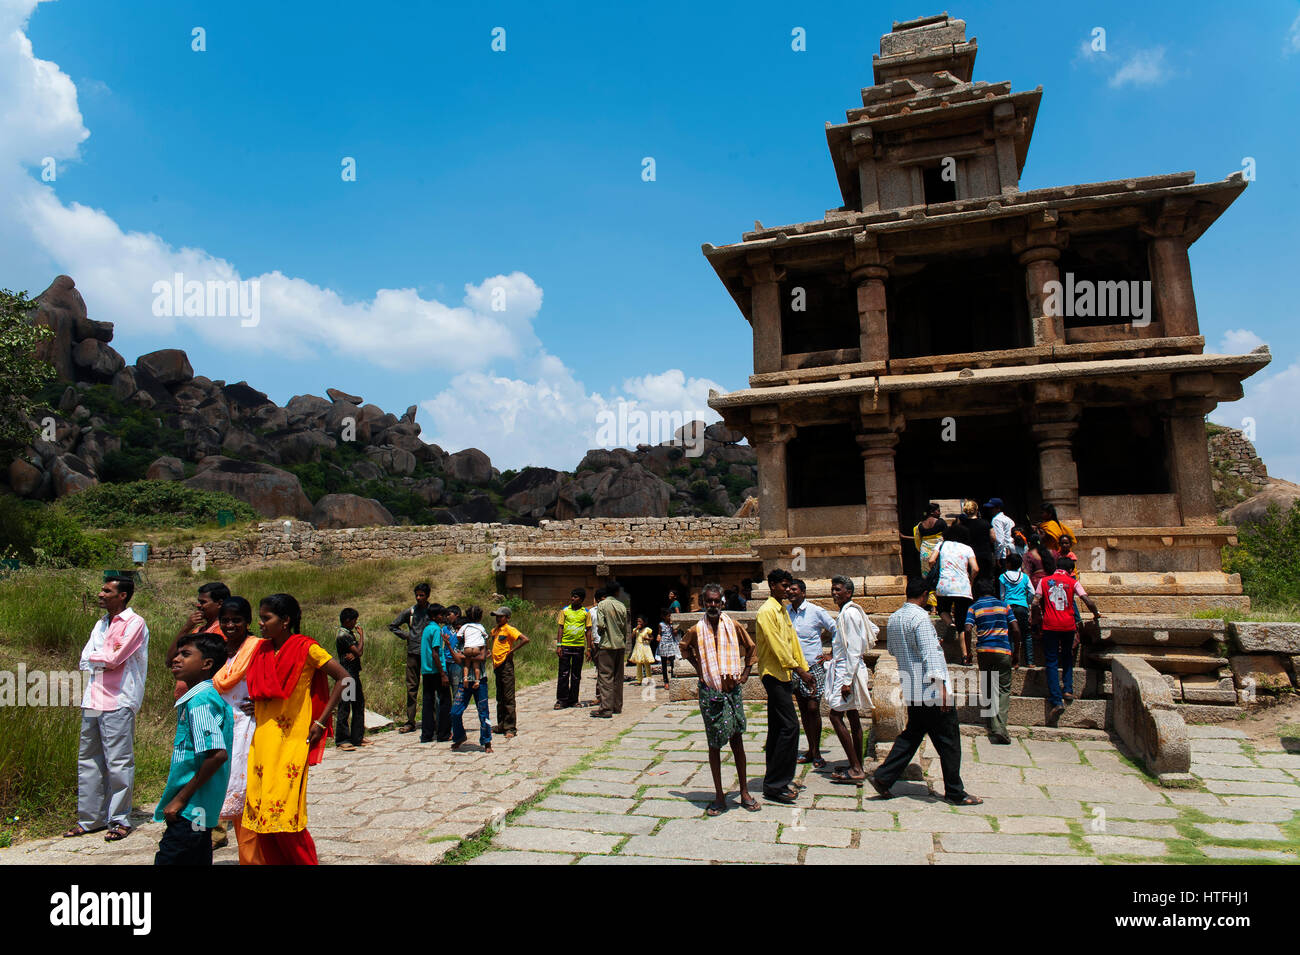 Indian people visiting Chitradurga Fort. Chitradurga is a